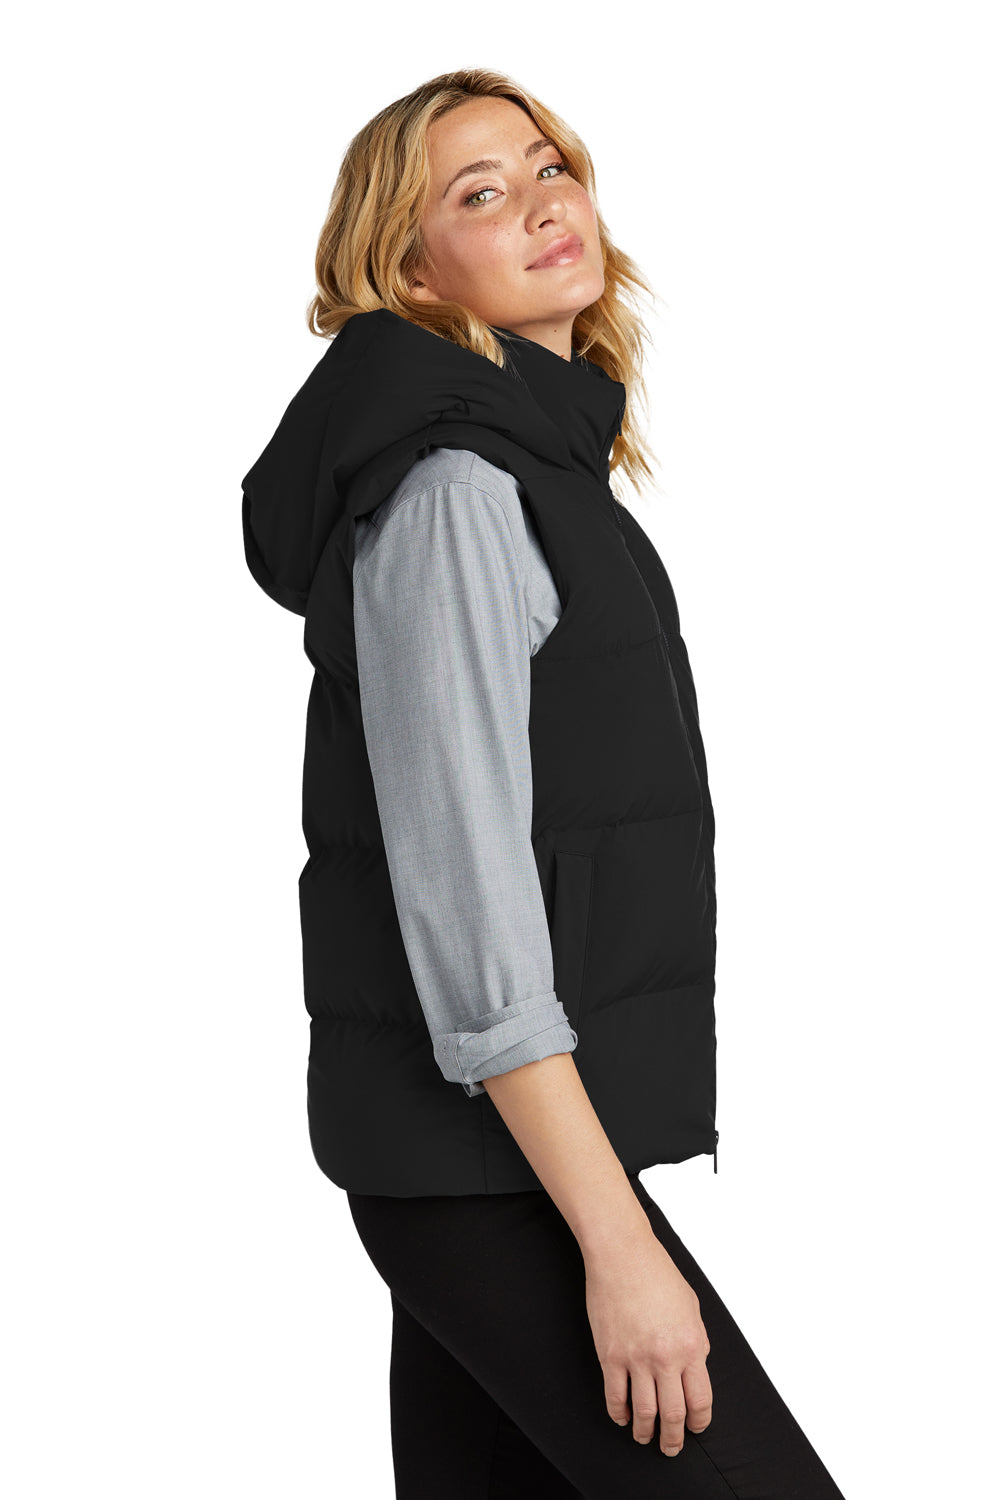 Mercer+Mettle MM7217 Womens Full Zip Hooded Puffy Vest Deep Black Side